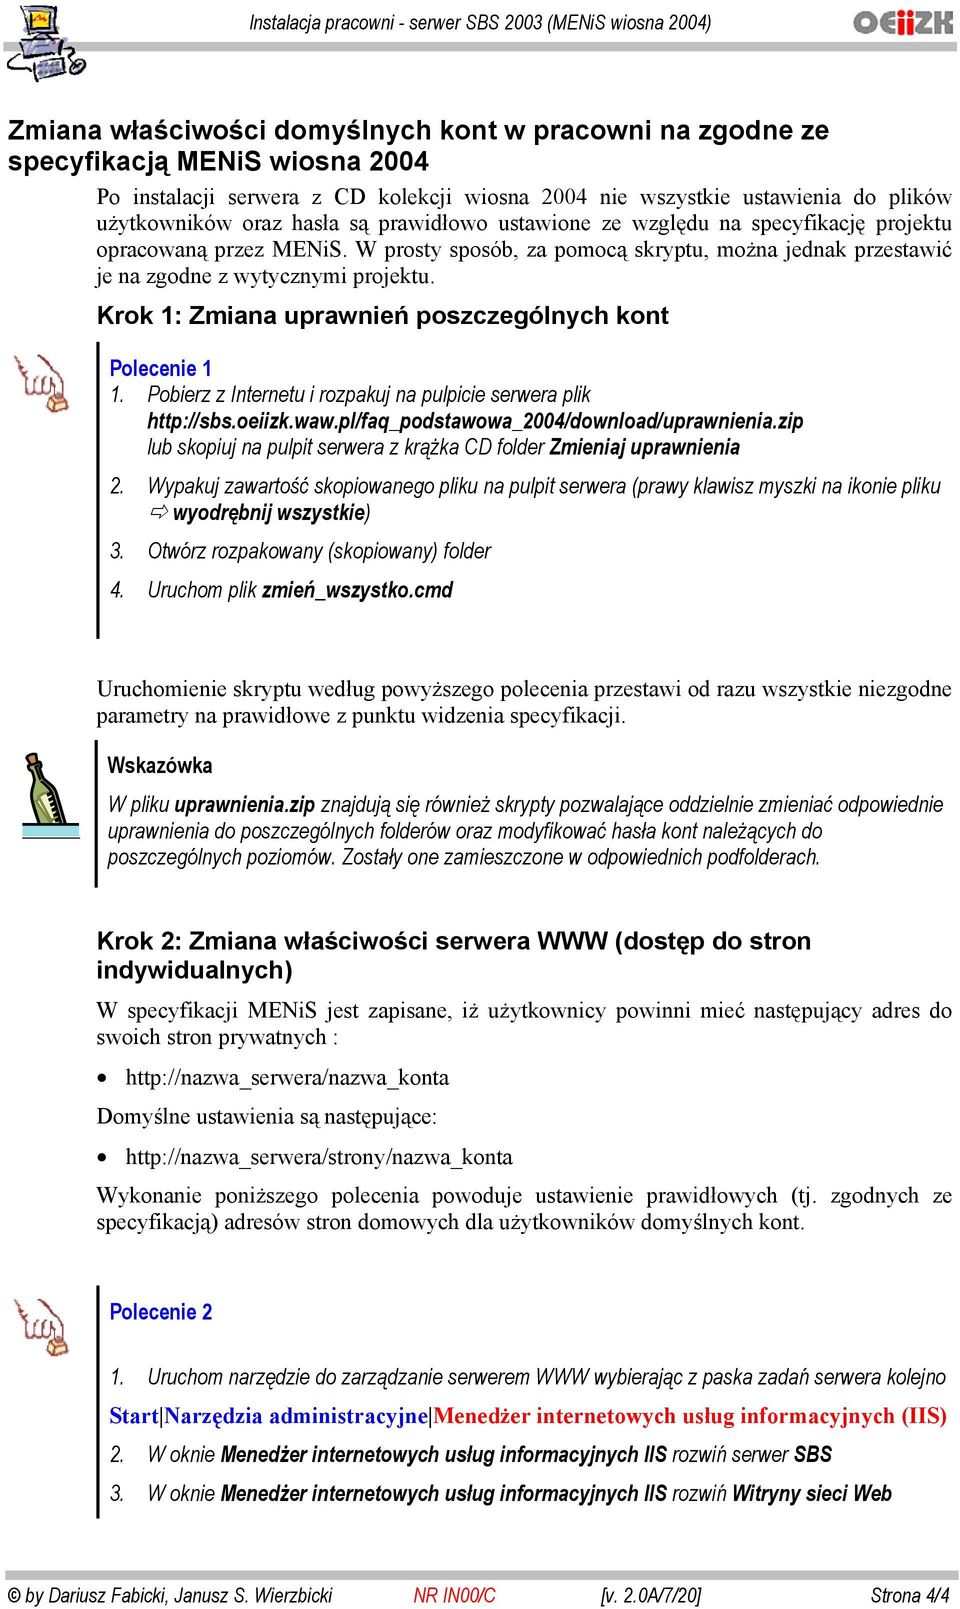 Krok 1: Zmiana uprawnień poszczególnych kont Polecenie 1 1. Pobierz z Internetu i rozpakuj na pulpicie serwera plik http://sbs.oeiizk.waw.pl/faq_podstawowa_2004/download/uprawnienia.